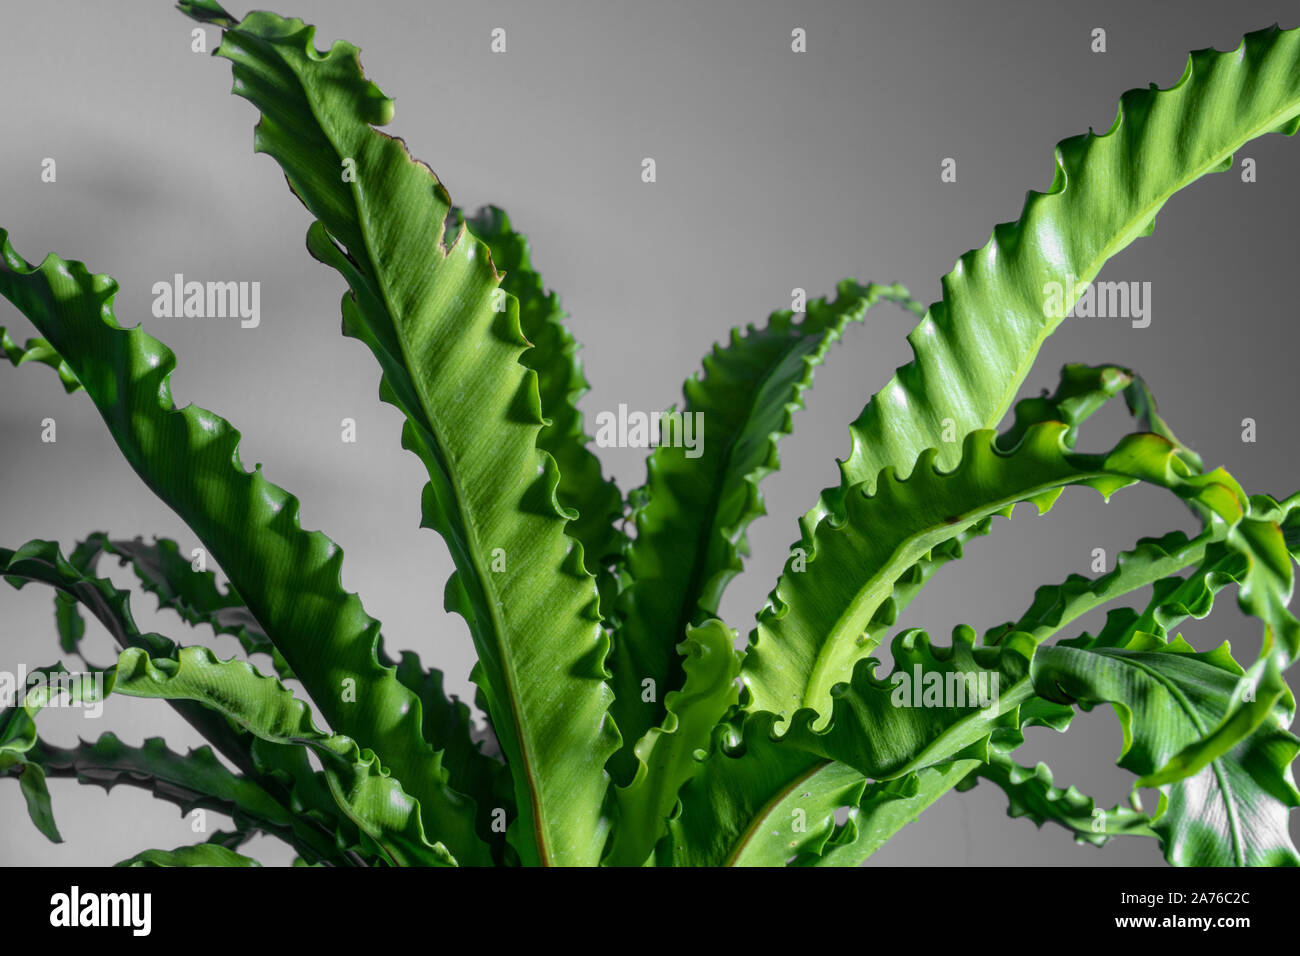 houseplant Asplenium nidus isolated on background Stock Photo